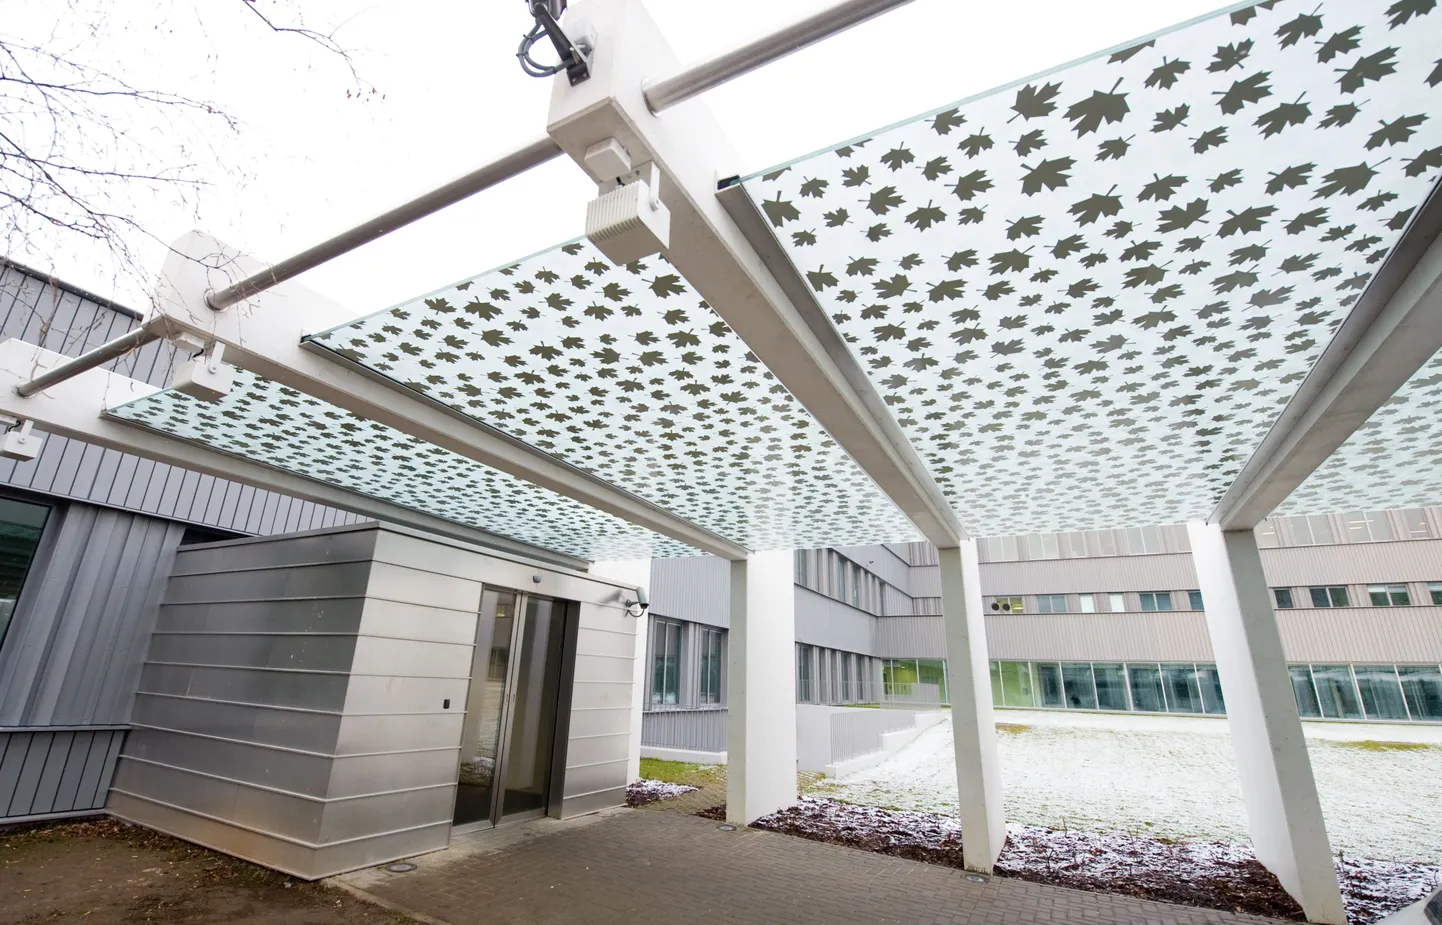 Põhja Eesti Regionaalhaigla uus sissepääs haigla X-korpuses.